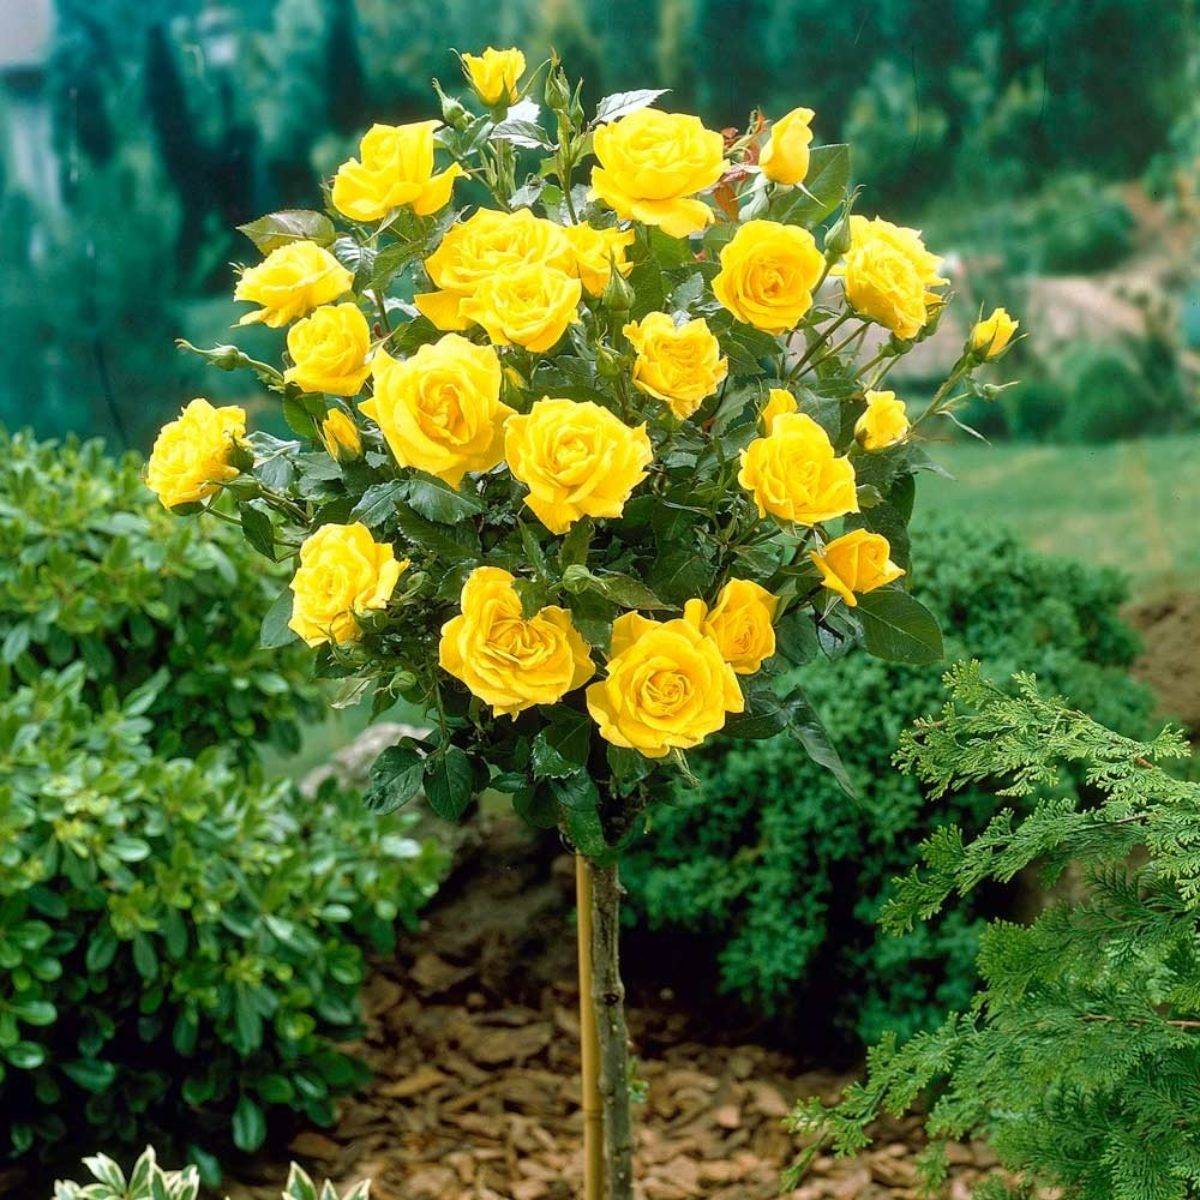 «глория дей» — самая знаменитая роза хх века